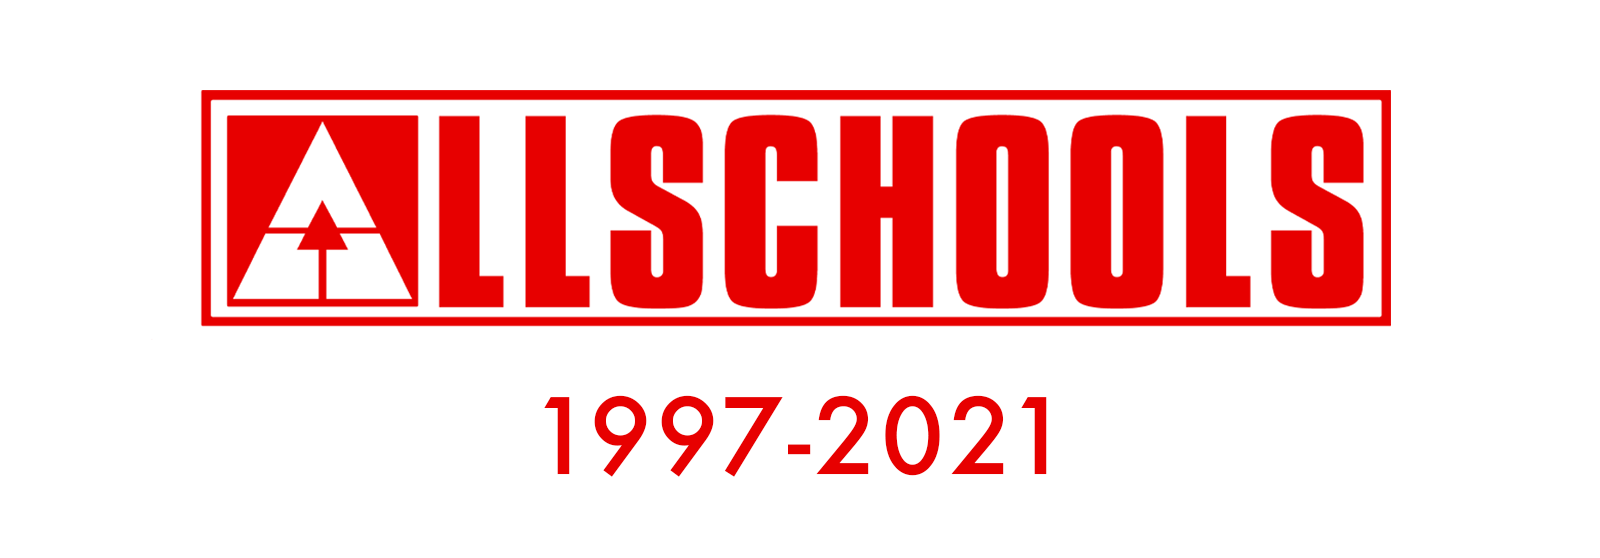 Allschools is dead